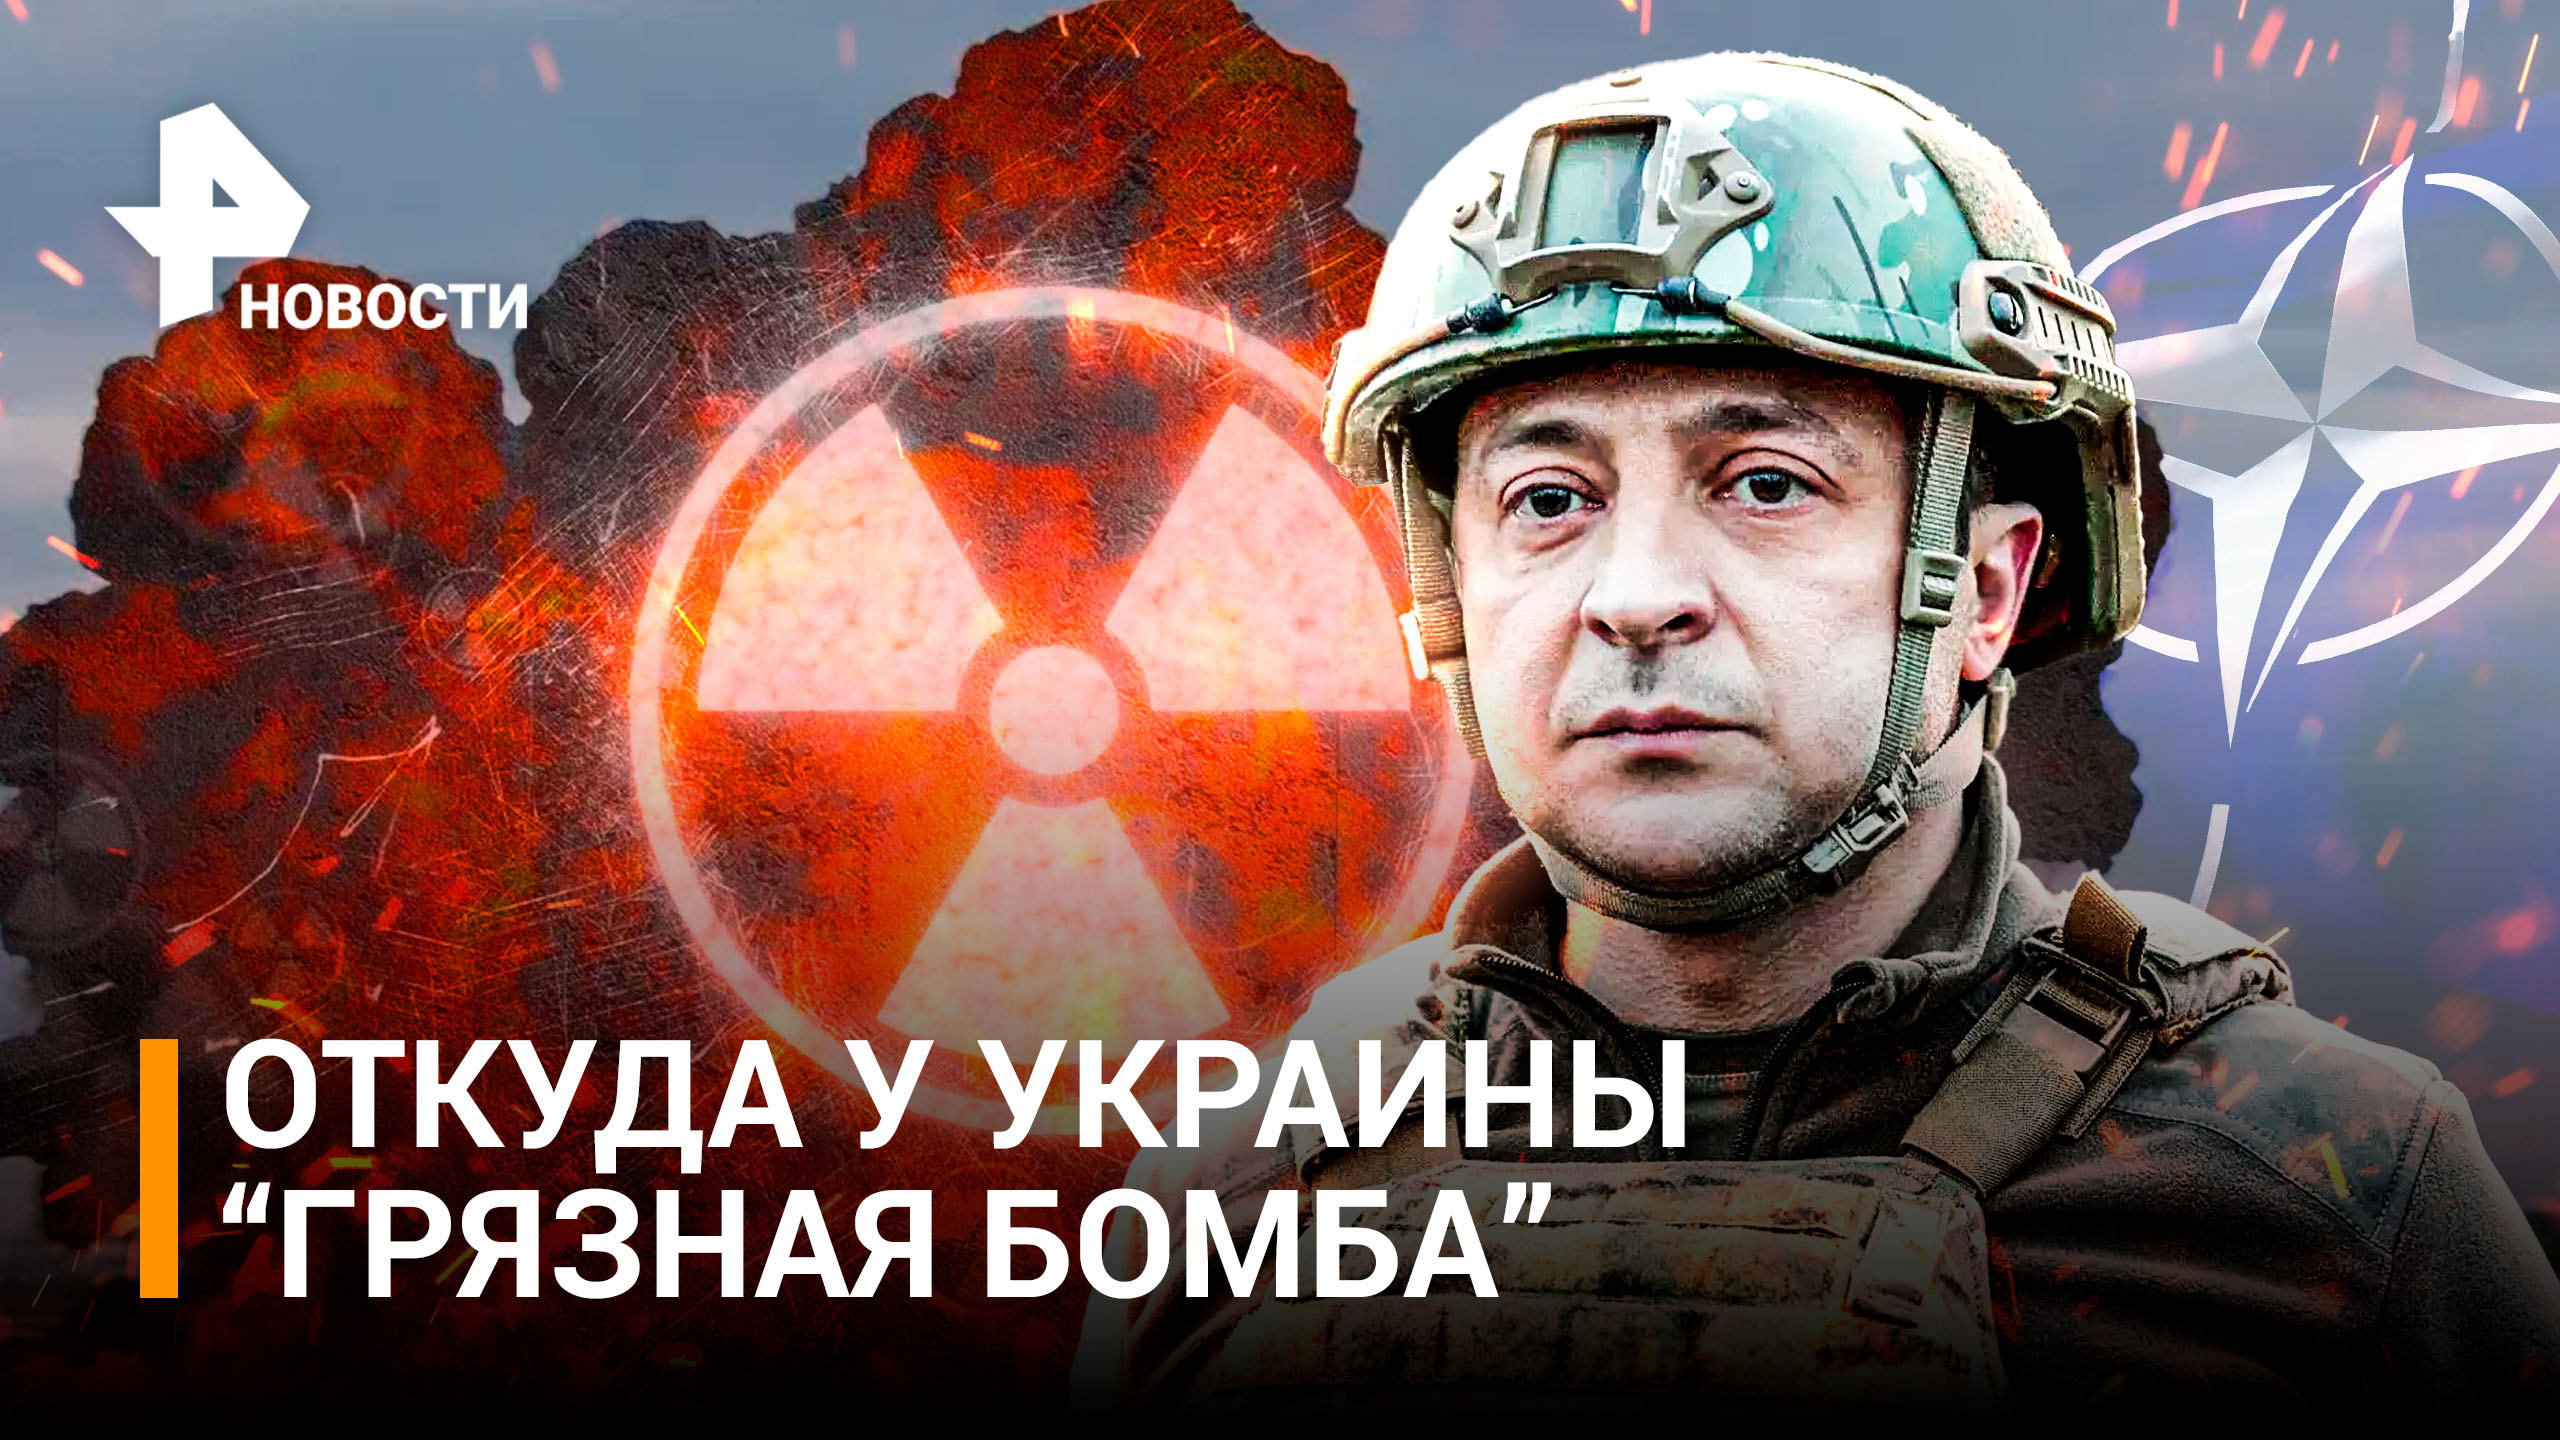 Второй Чернобыль: Украина готовит взрыв "грязной бомбы", чтобы началась Третья мировая / РЕН Новости